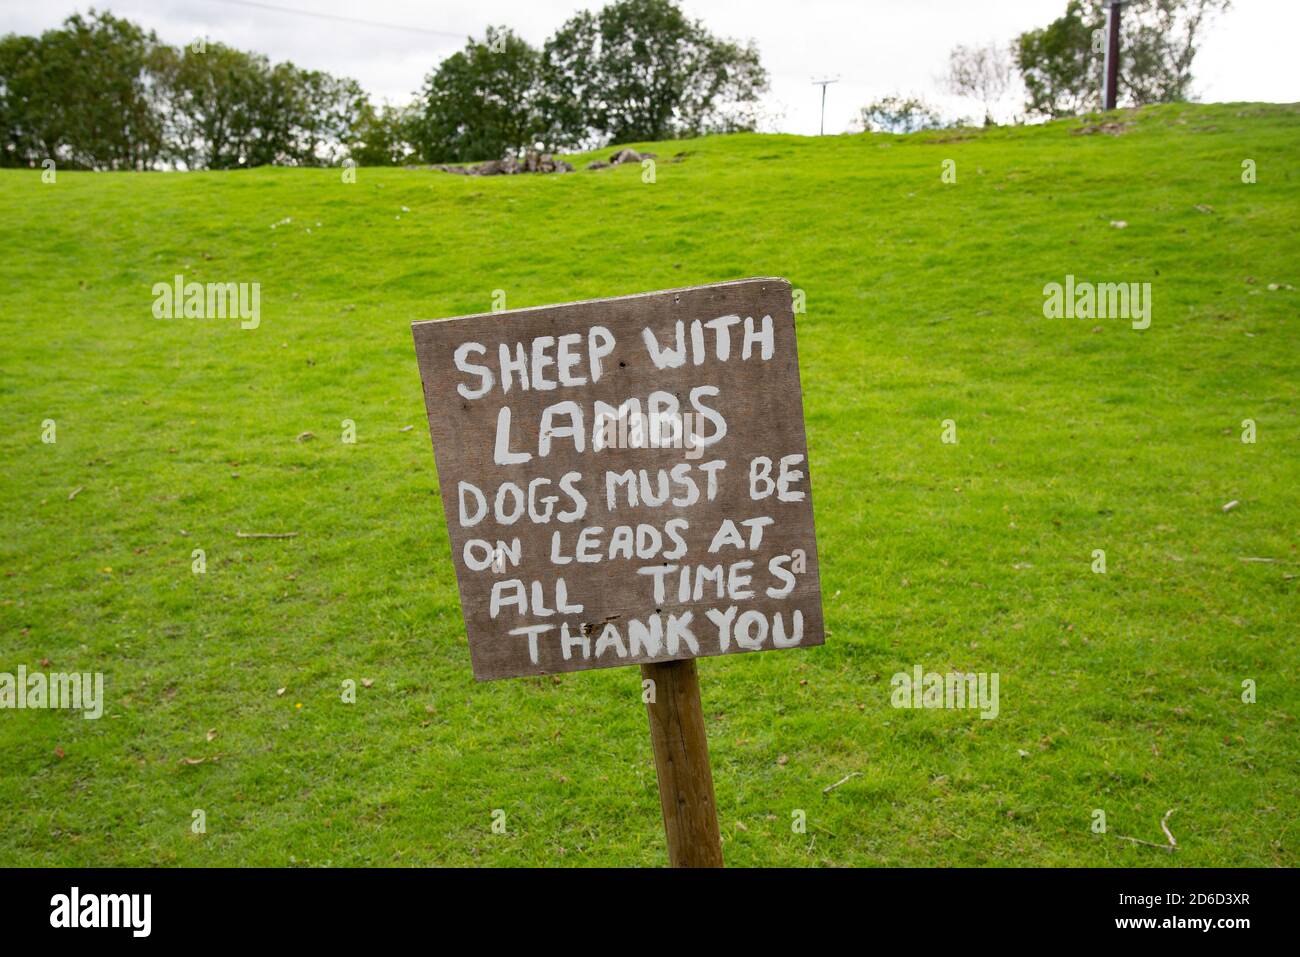 Melden Sie sich in einem Feld in der Nähe von Silverdale, Lancashire, UK. Schafe mit Lämmern Hunde müssen auf der Leitung zu allen Zeiten Danke. Stockfoto